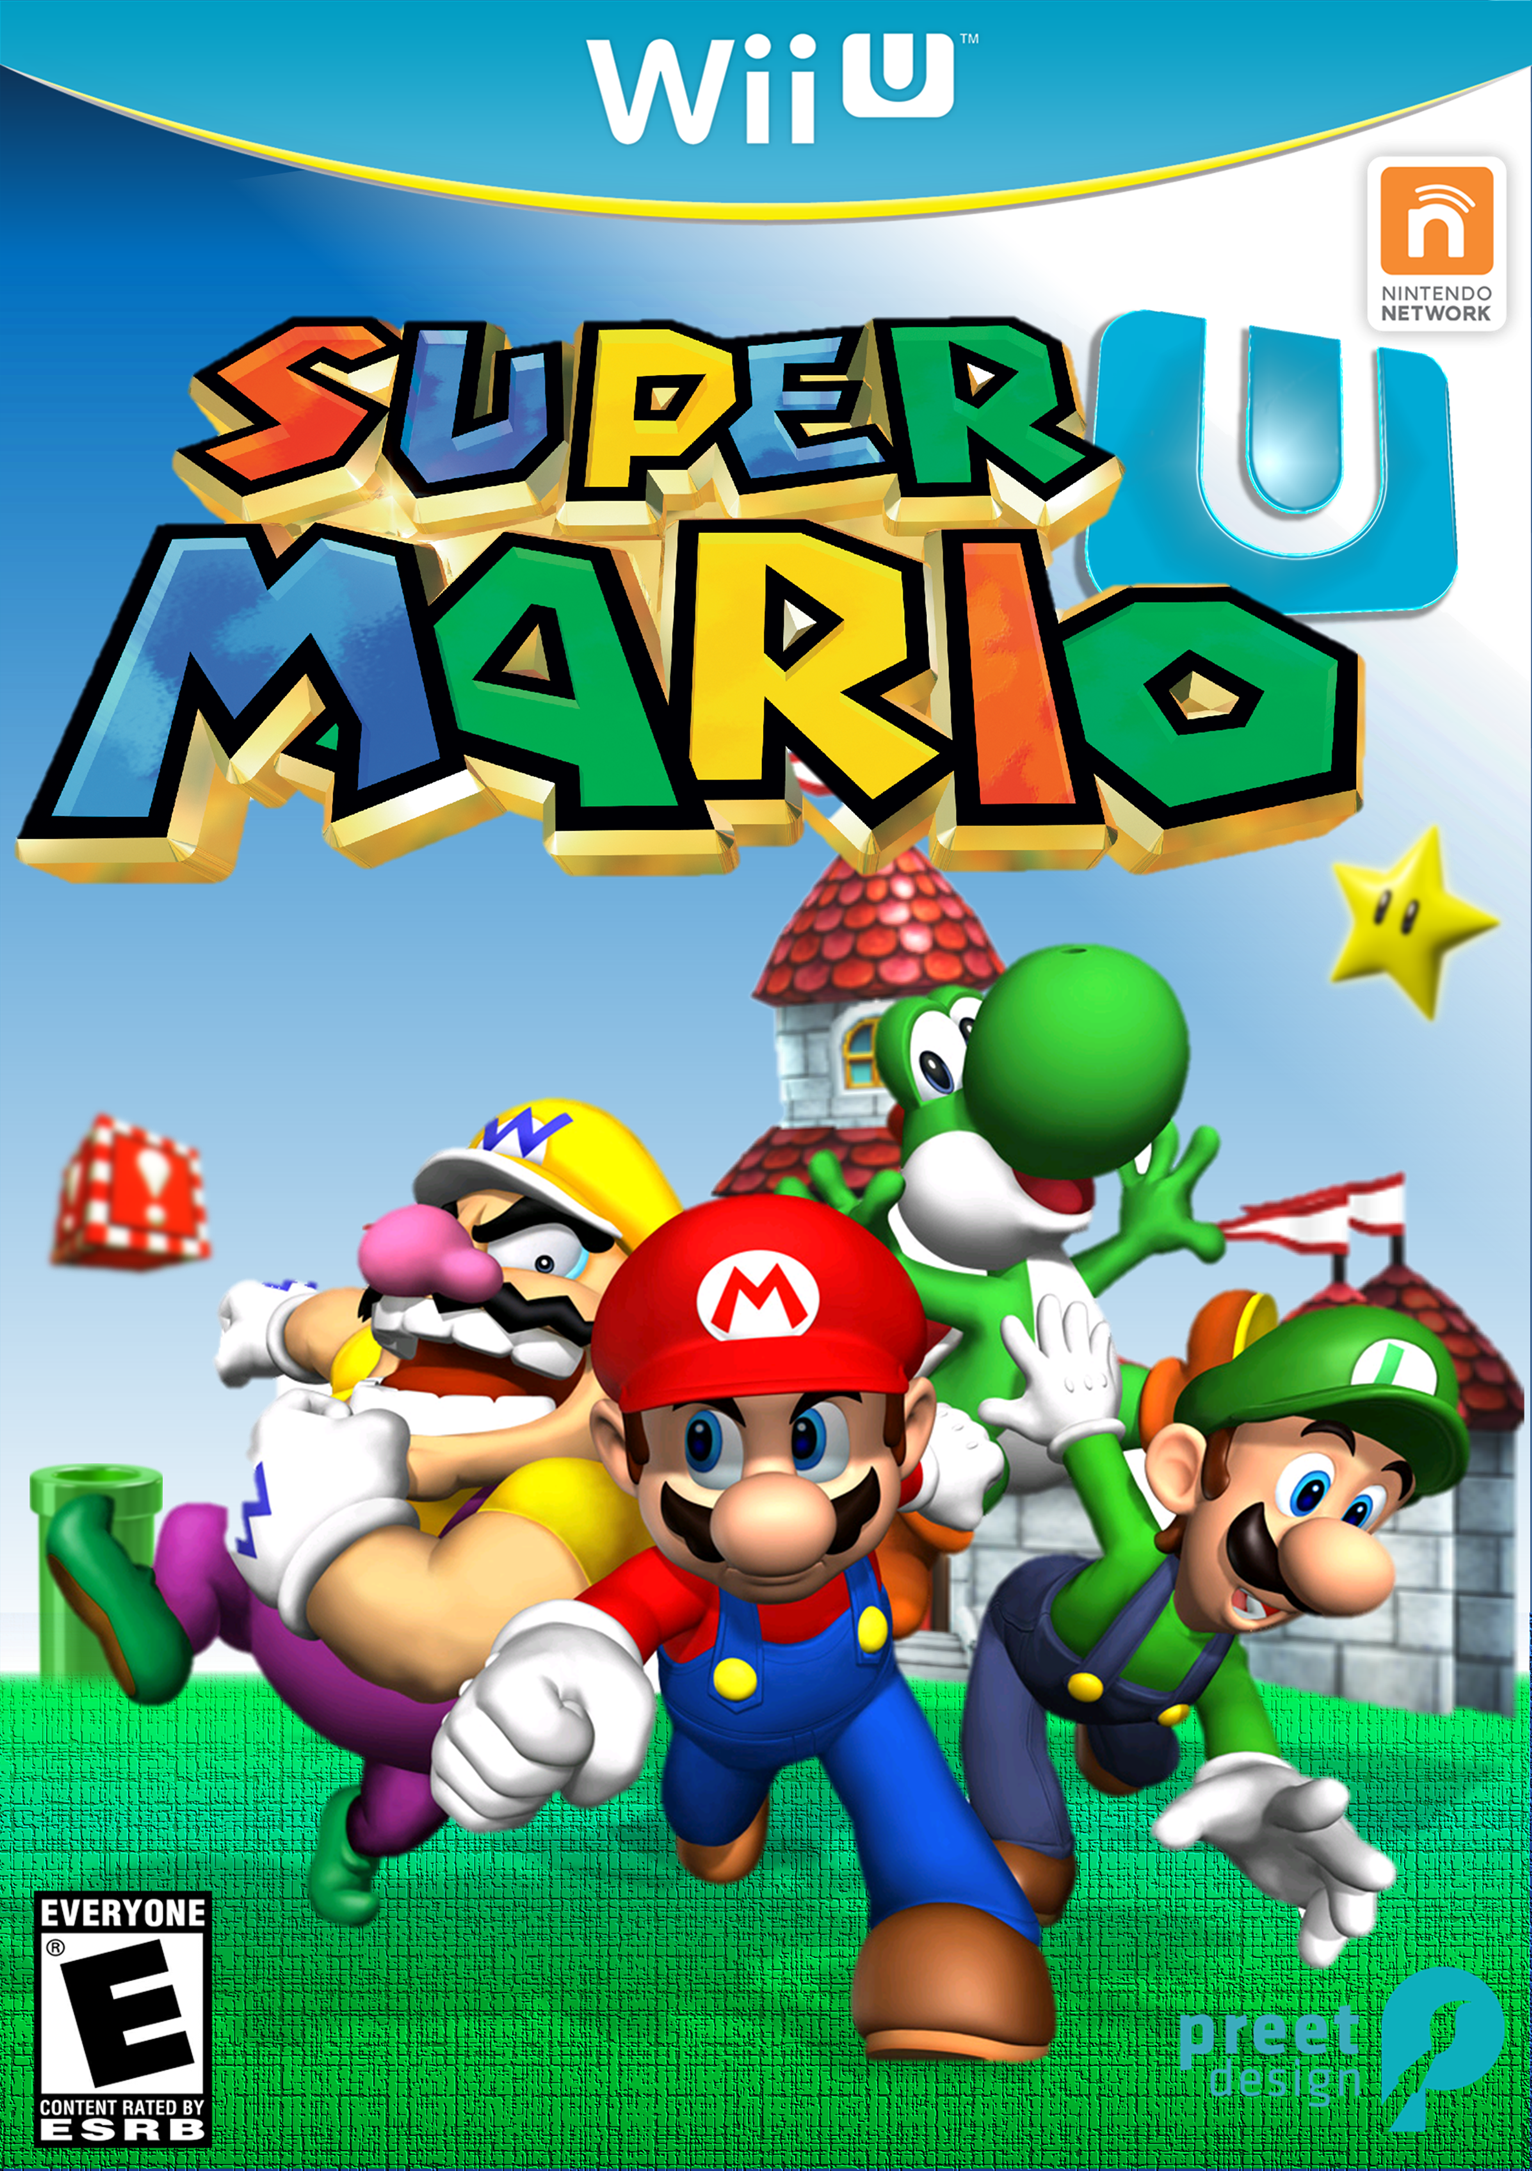 Марио Нинтендо 64. Super Mario 64 Nintendo 64. Nintendo 64 Mario 64 диск. Super Mario 64 обложка. Nintendo 64 mario